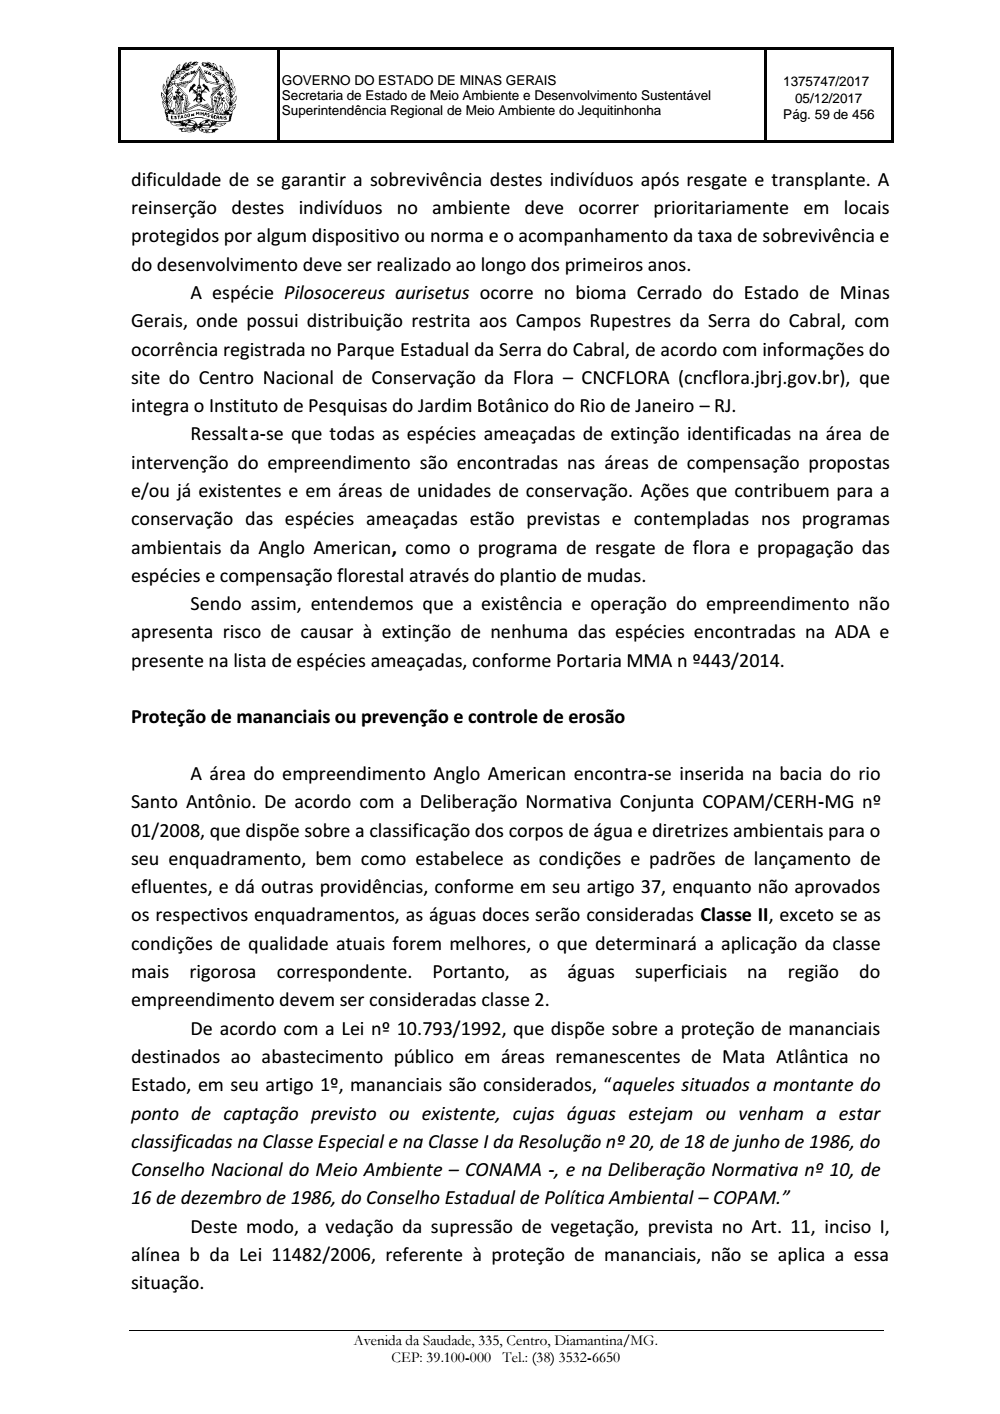 Page 59 from Parecer único da Secretaria de estado de Meio Ambiente e Desenvolvimento Sustentável (SEMAD)